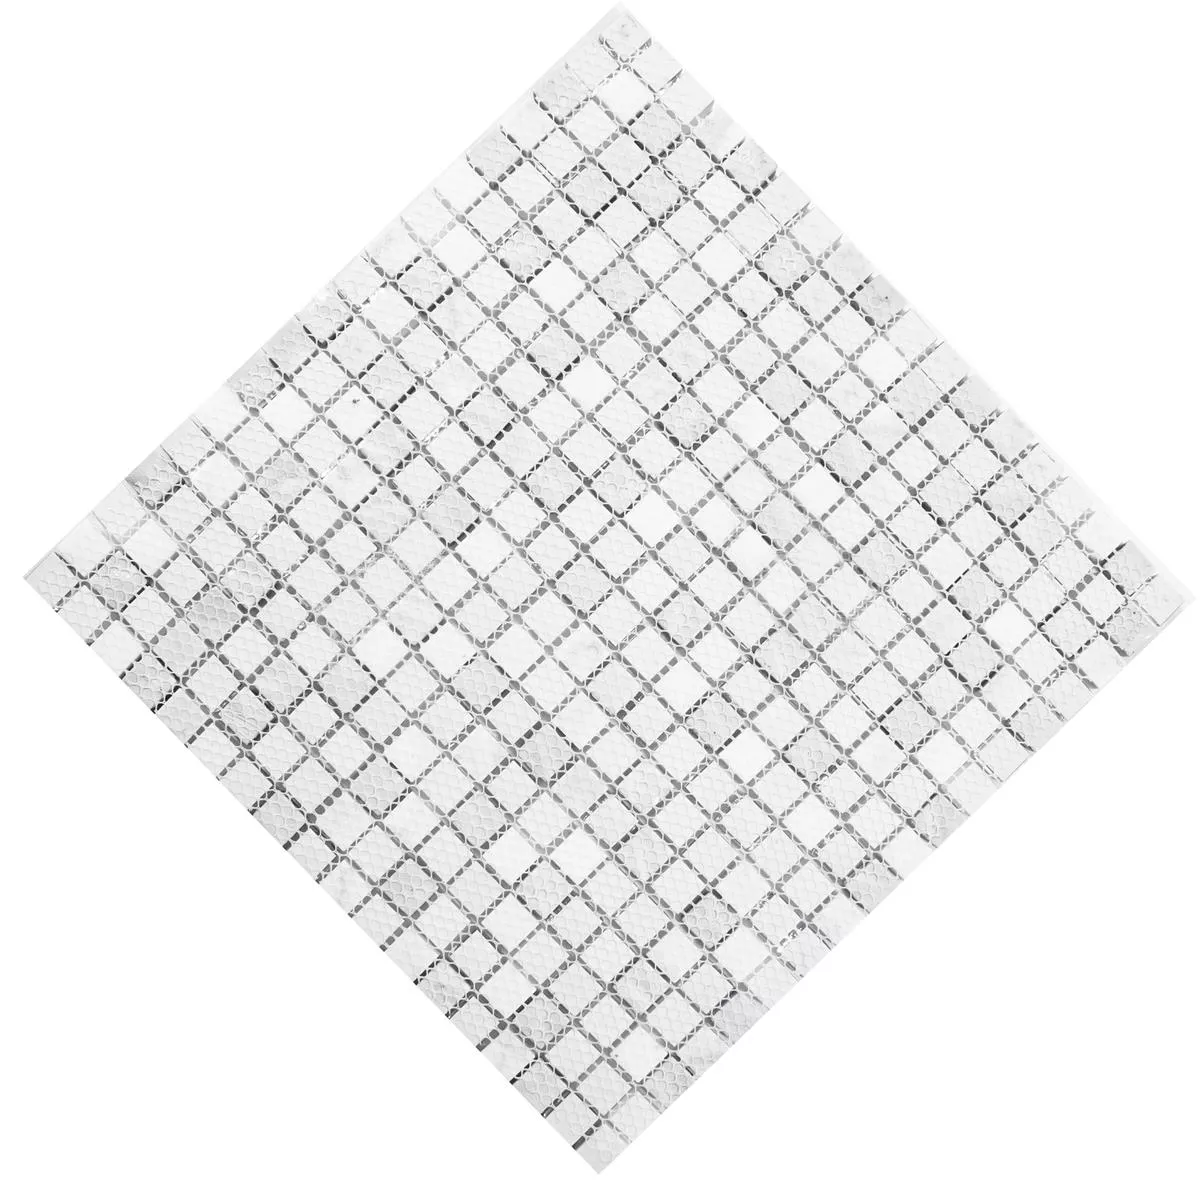 Campione Mosaico Di Vetro Piastrelle Lexington Vetro Mix di Materiali Bianco